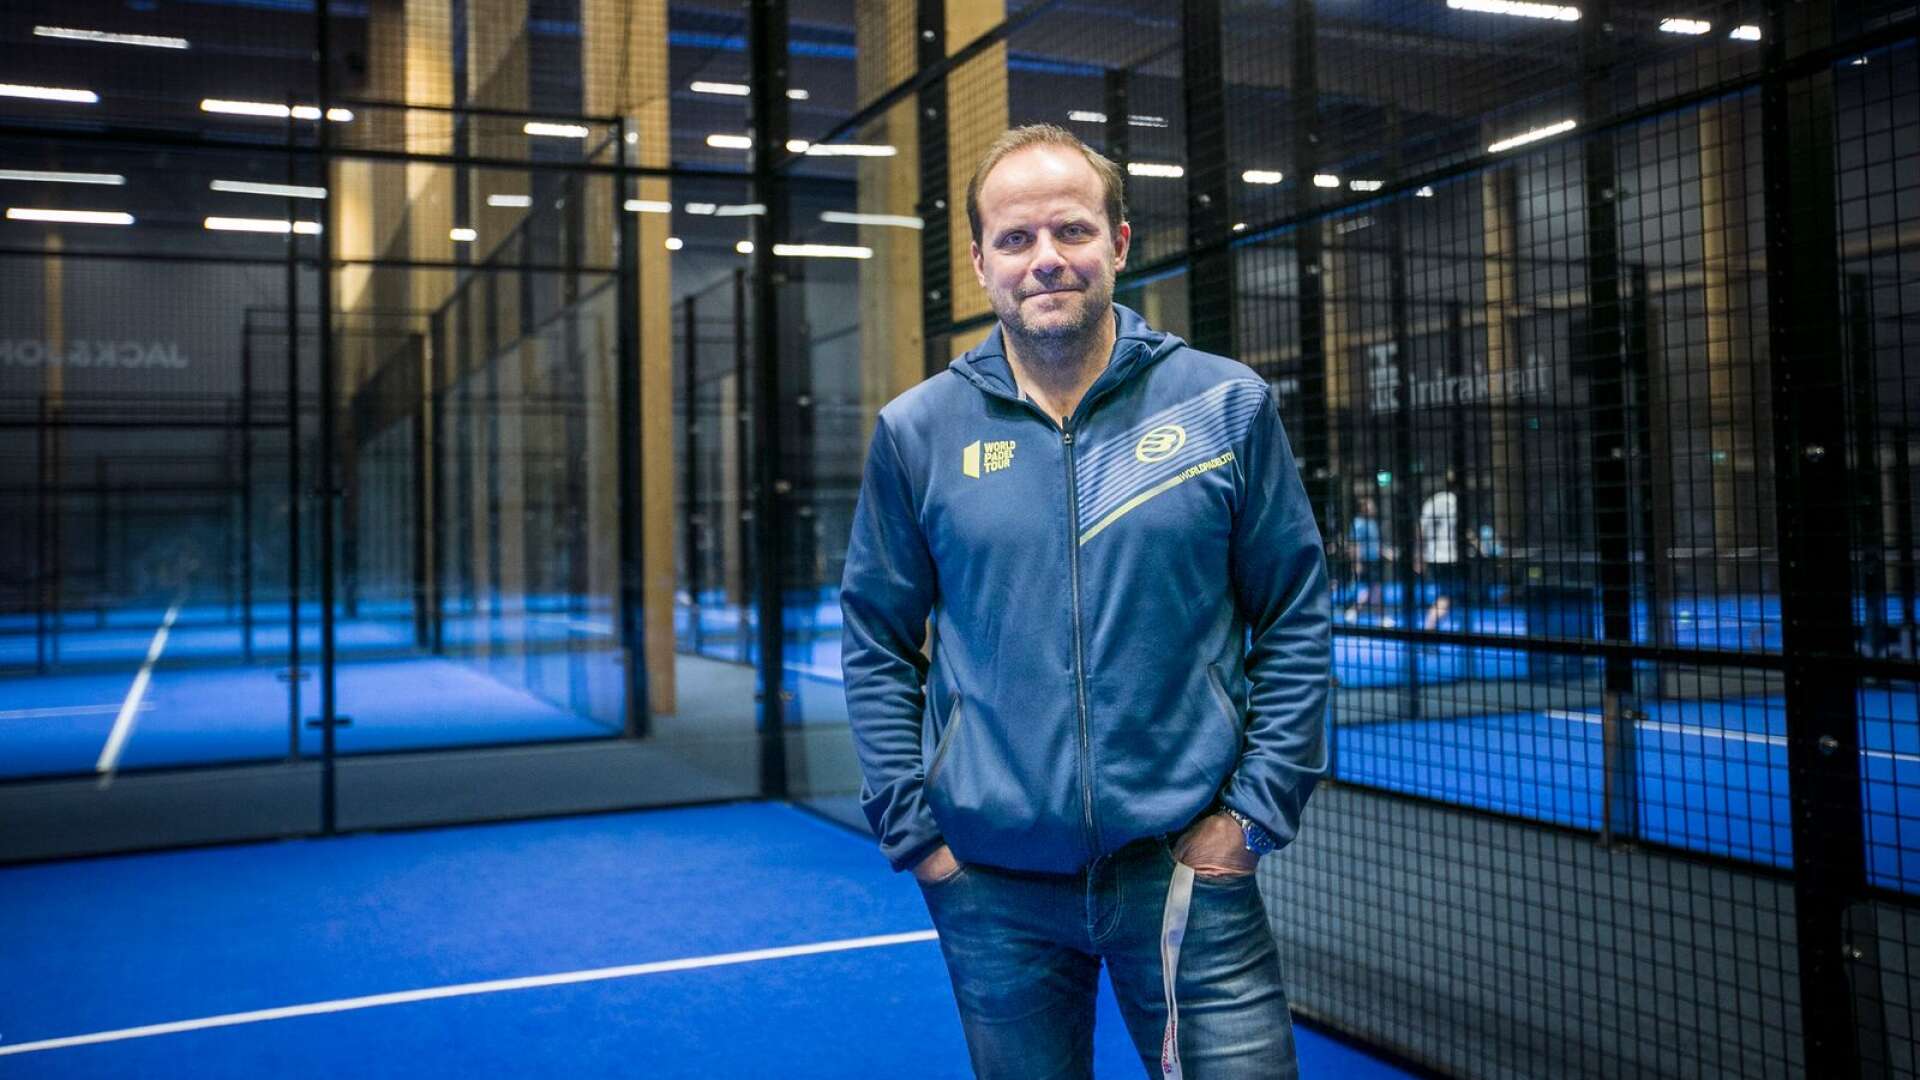 Padel är en sport som saknats hos Karlstadsborna. Det tror i alla fall Greger Artursson som är hall- och verksamhetschef för Svea padels anläggning i Karlstad.